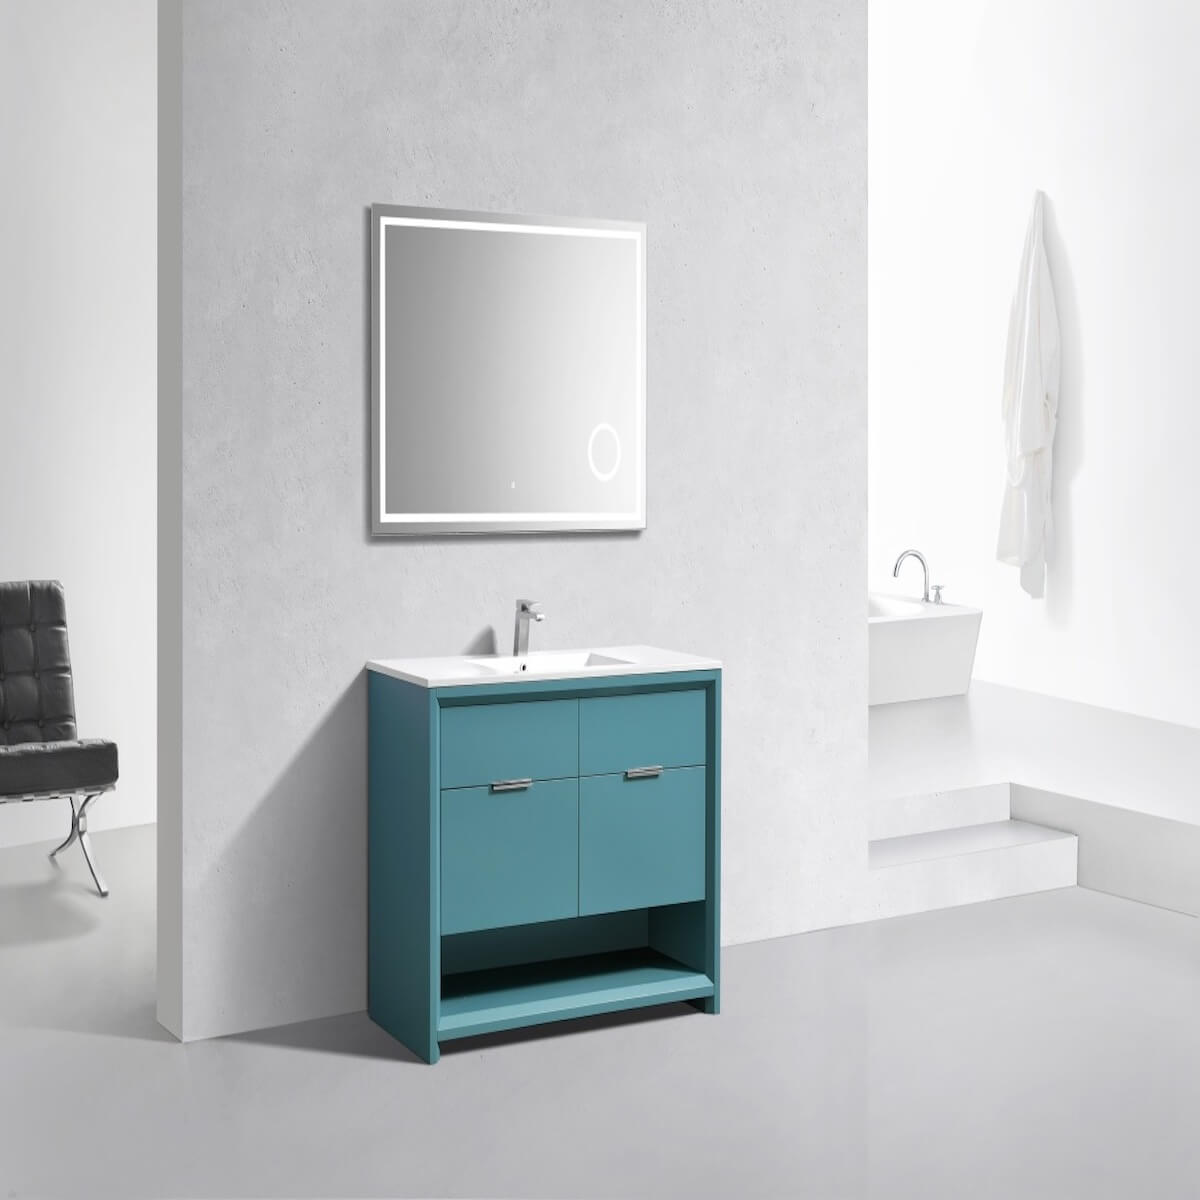 KubeBath Nudo 48” Teal Green Free Standing Modern Bathroom Single Sink Vanity Side in Bathroom NUDO48S-TG #finish_teal green